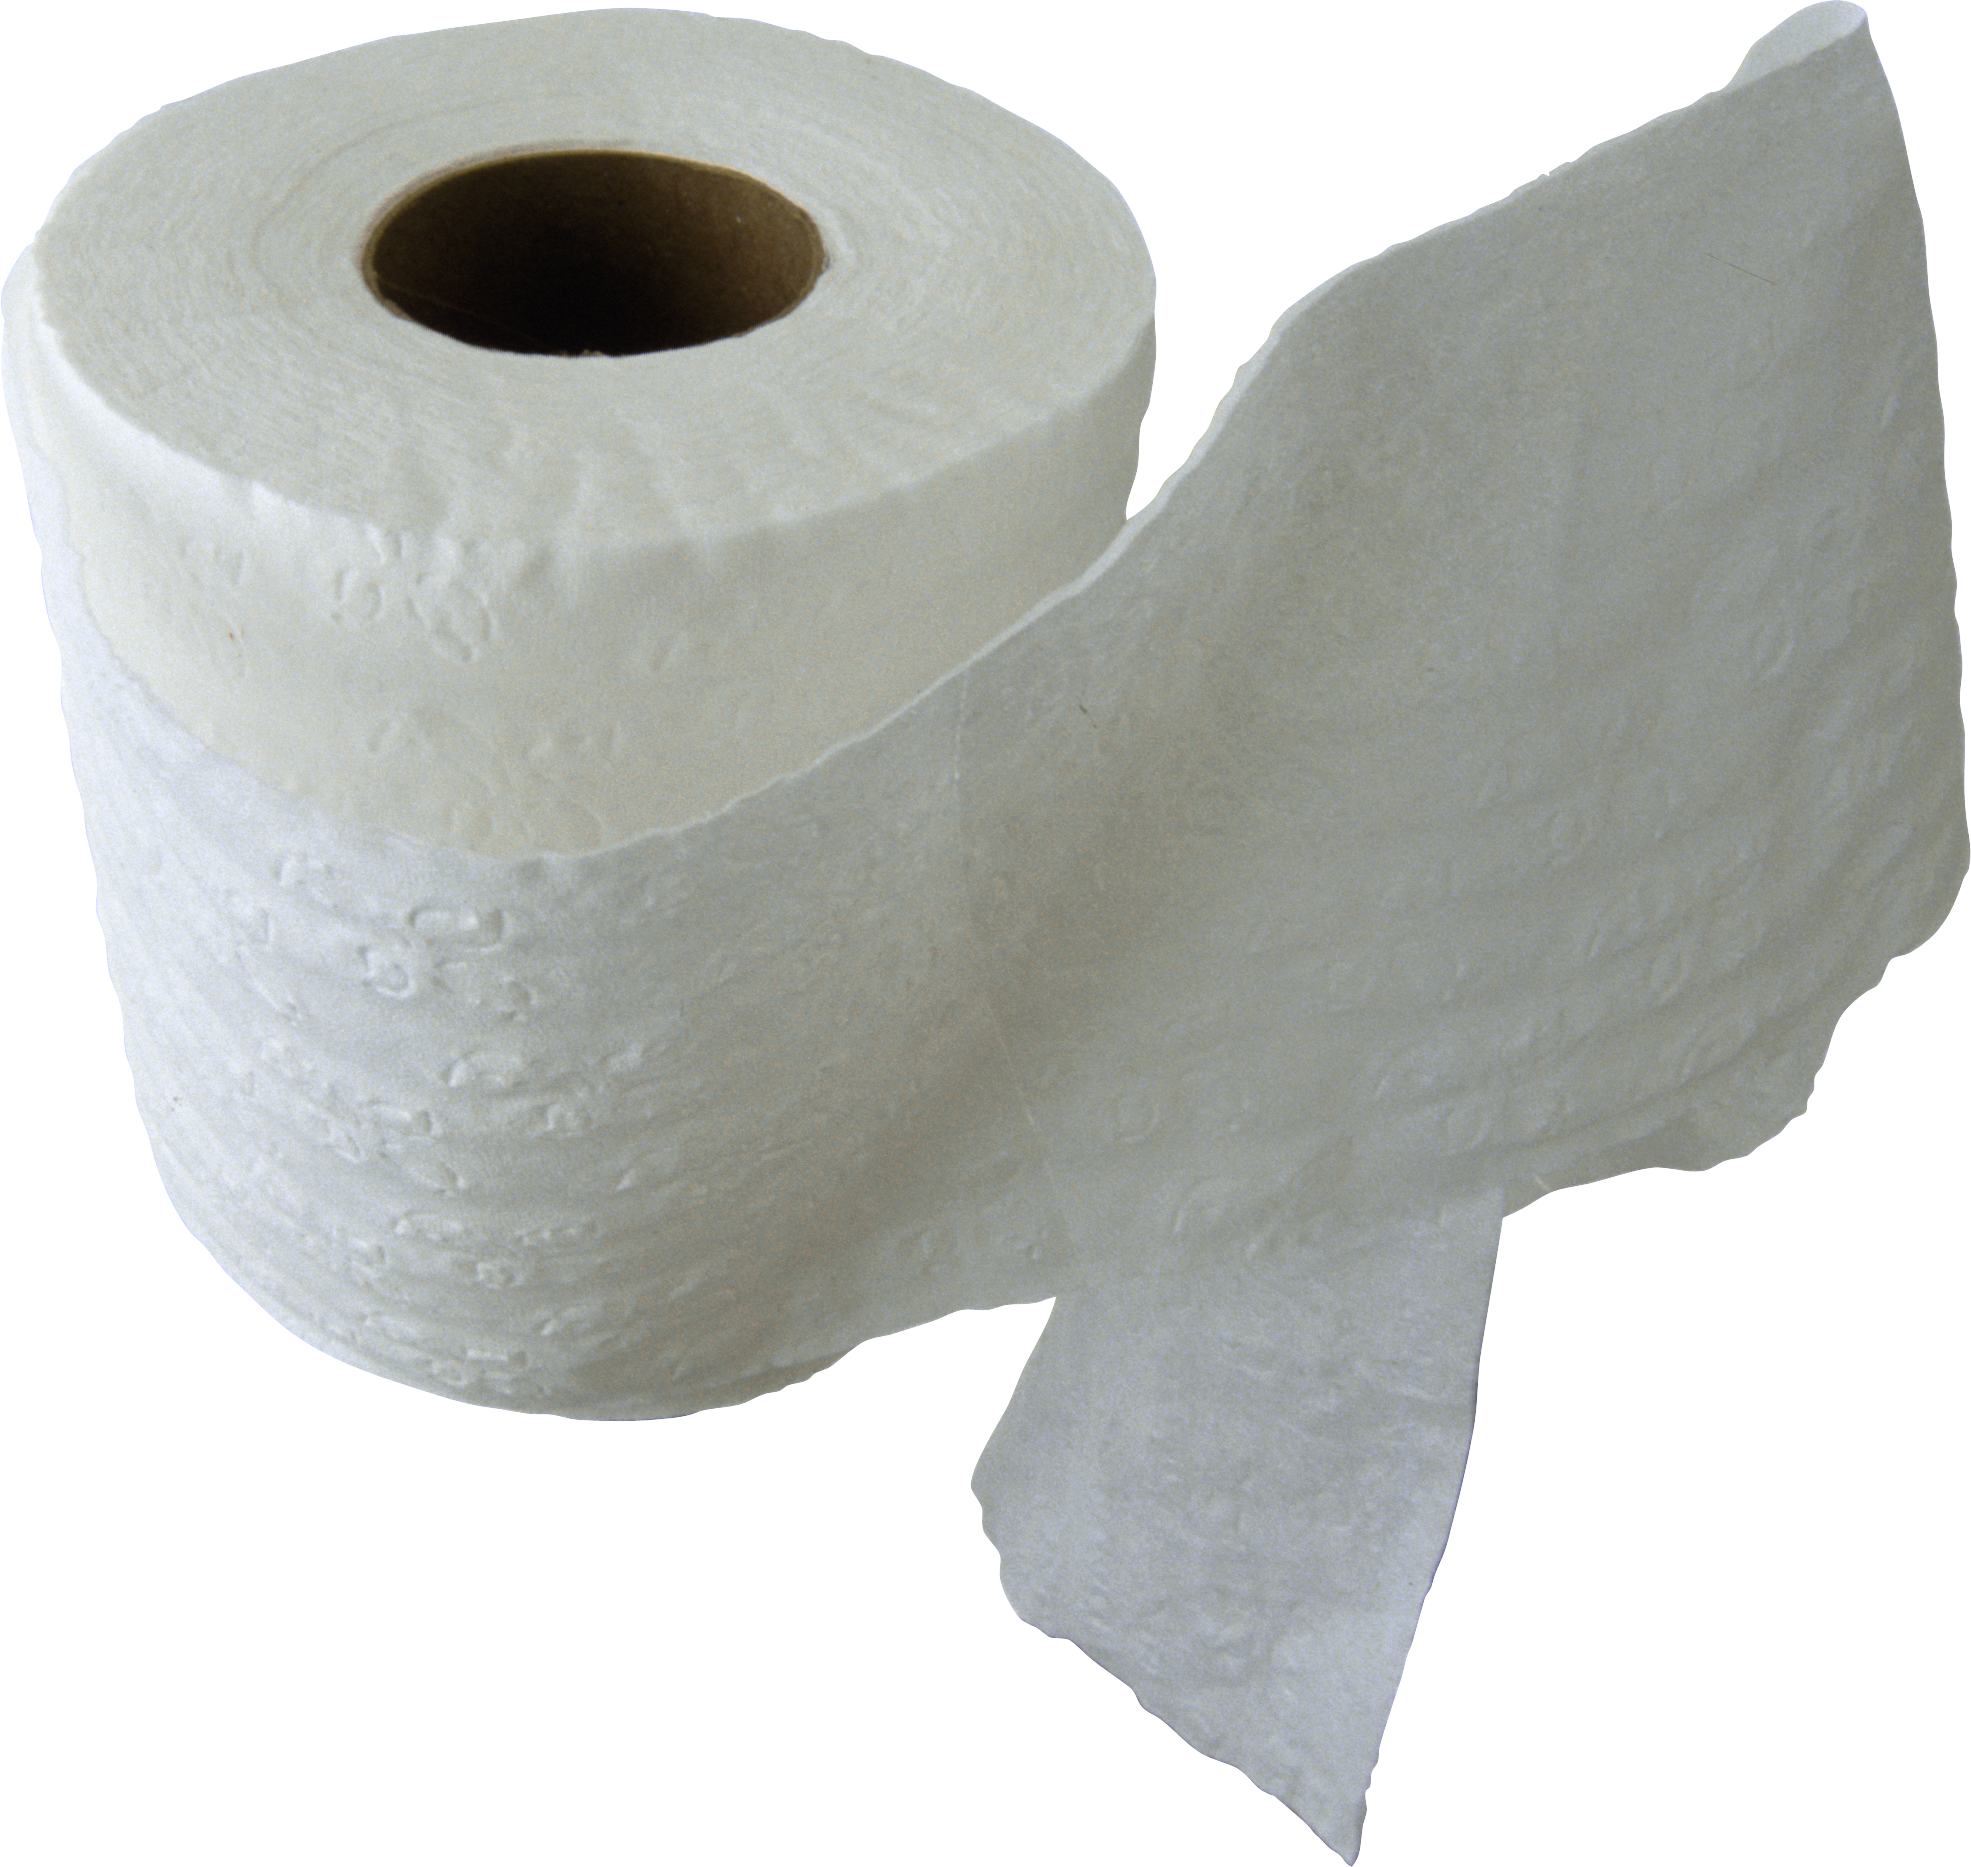 Toilet Paper - Toilet Paper P